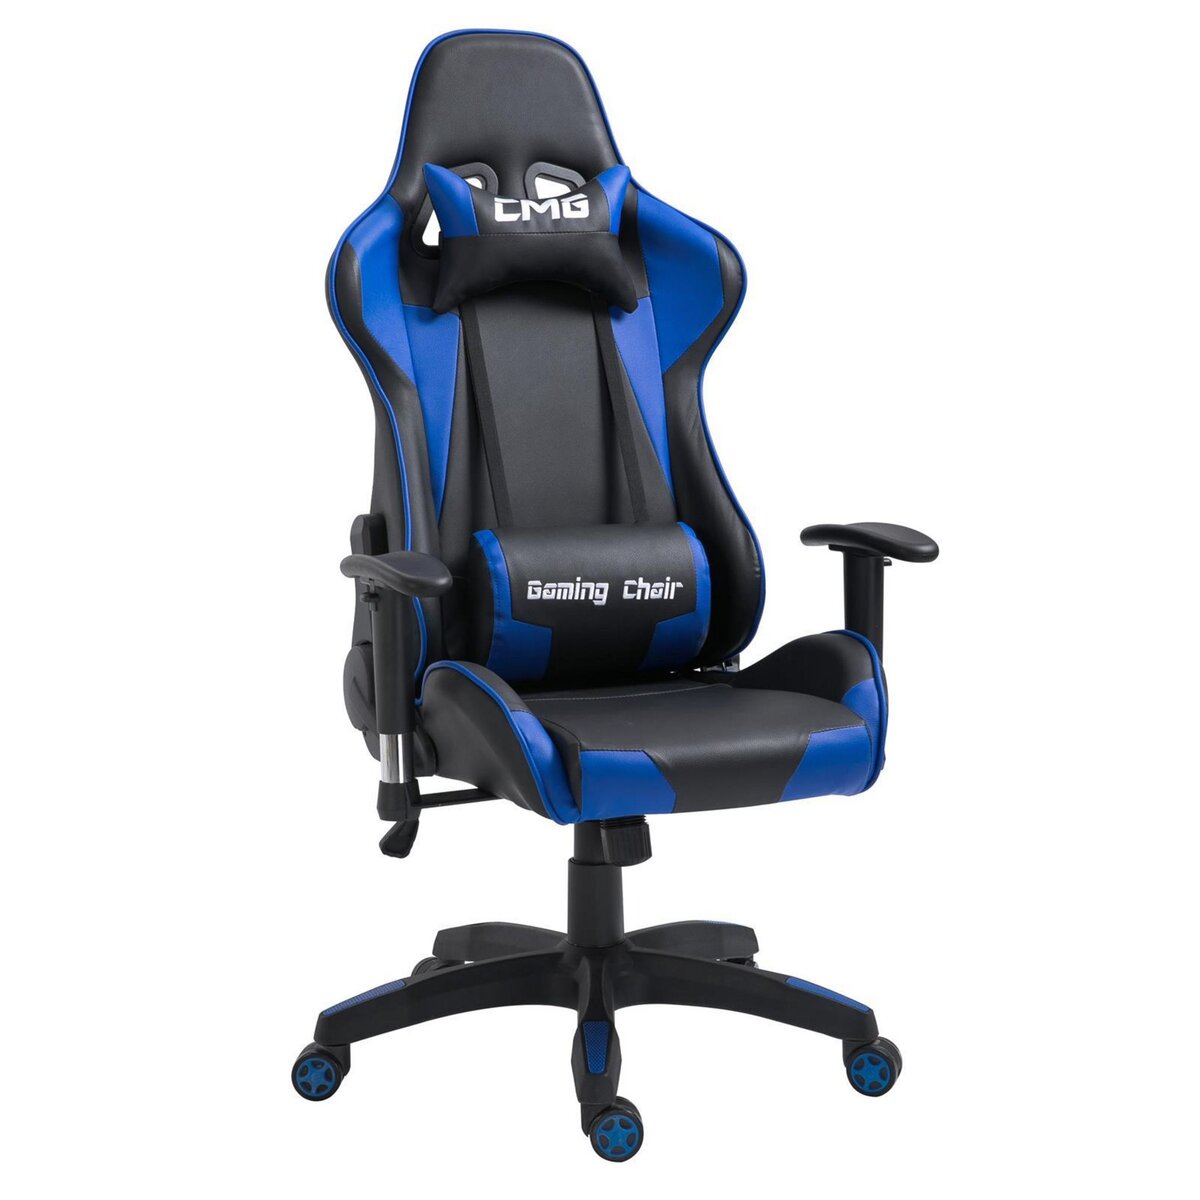 IDIMEX Chaise de bureau GAMING fauteuil ergonomique avec coussins, siège style racing racer gamer chair, revêtement synthétique noir/bleu